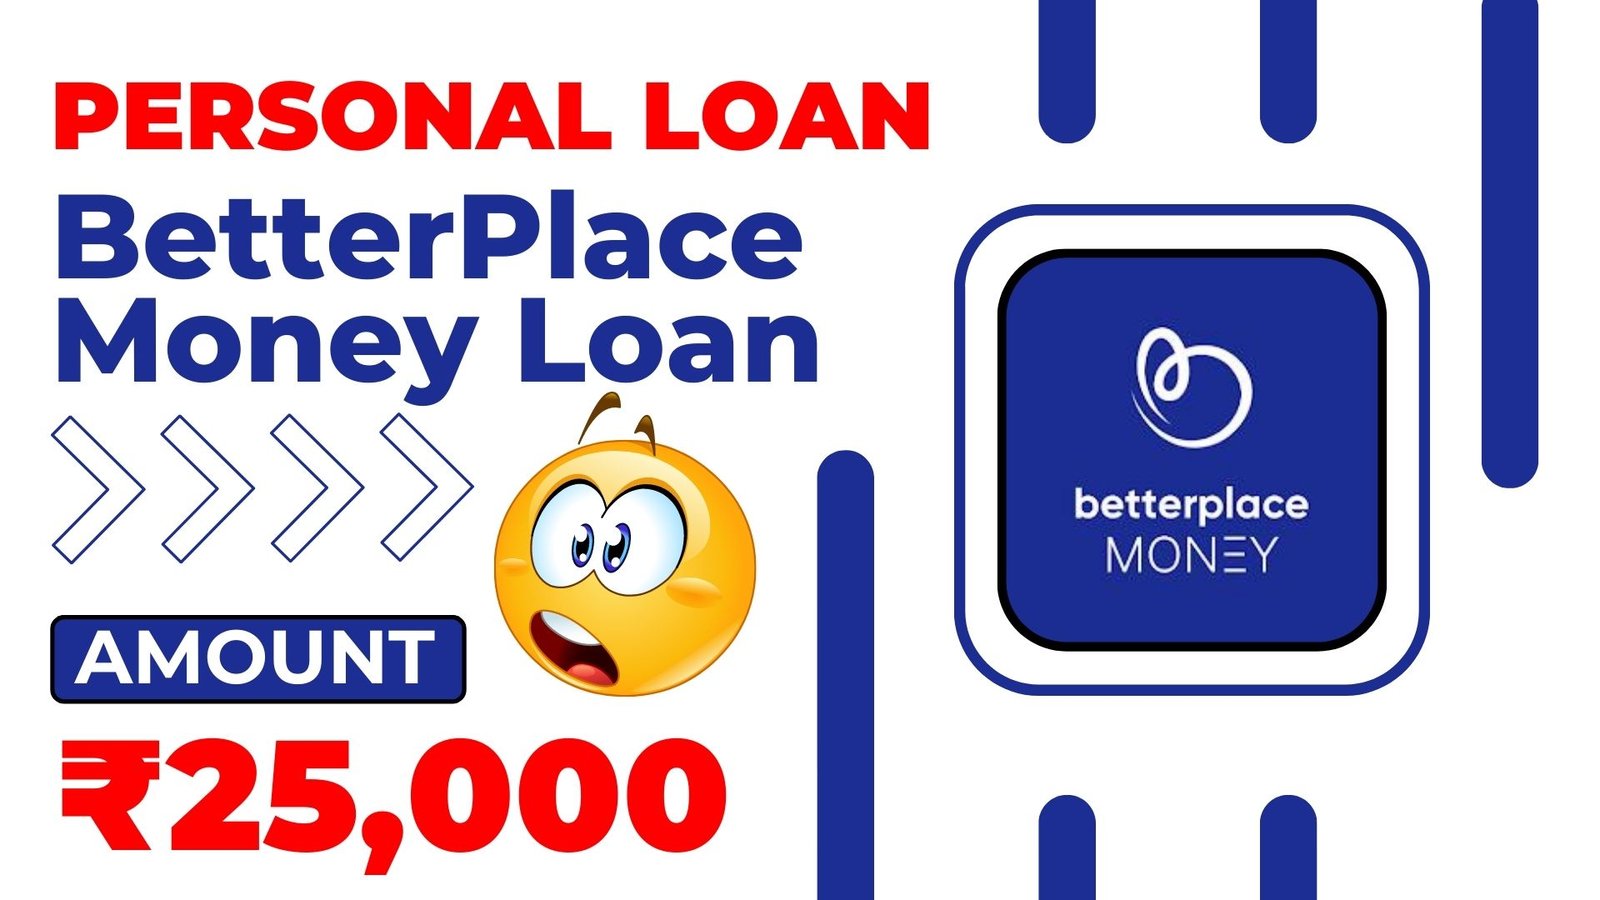 BetterPlace Money Loan App Loan Amount